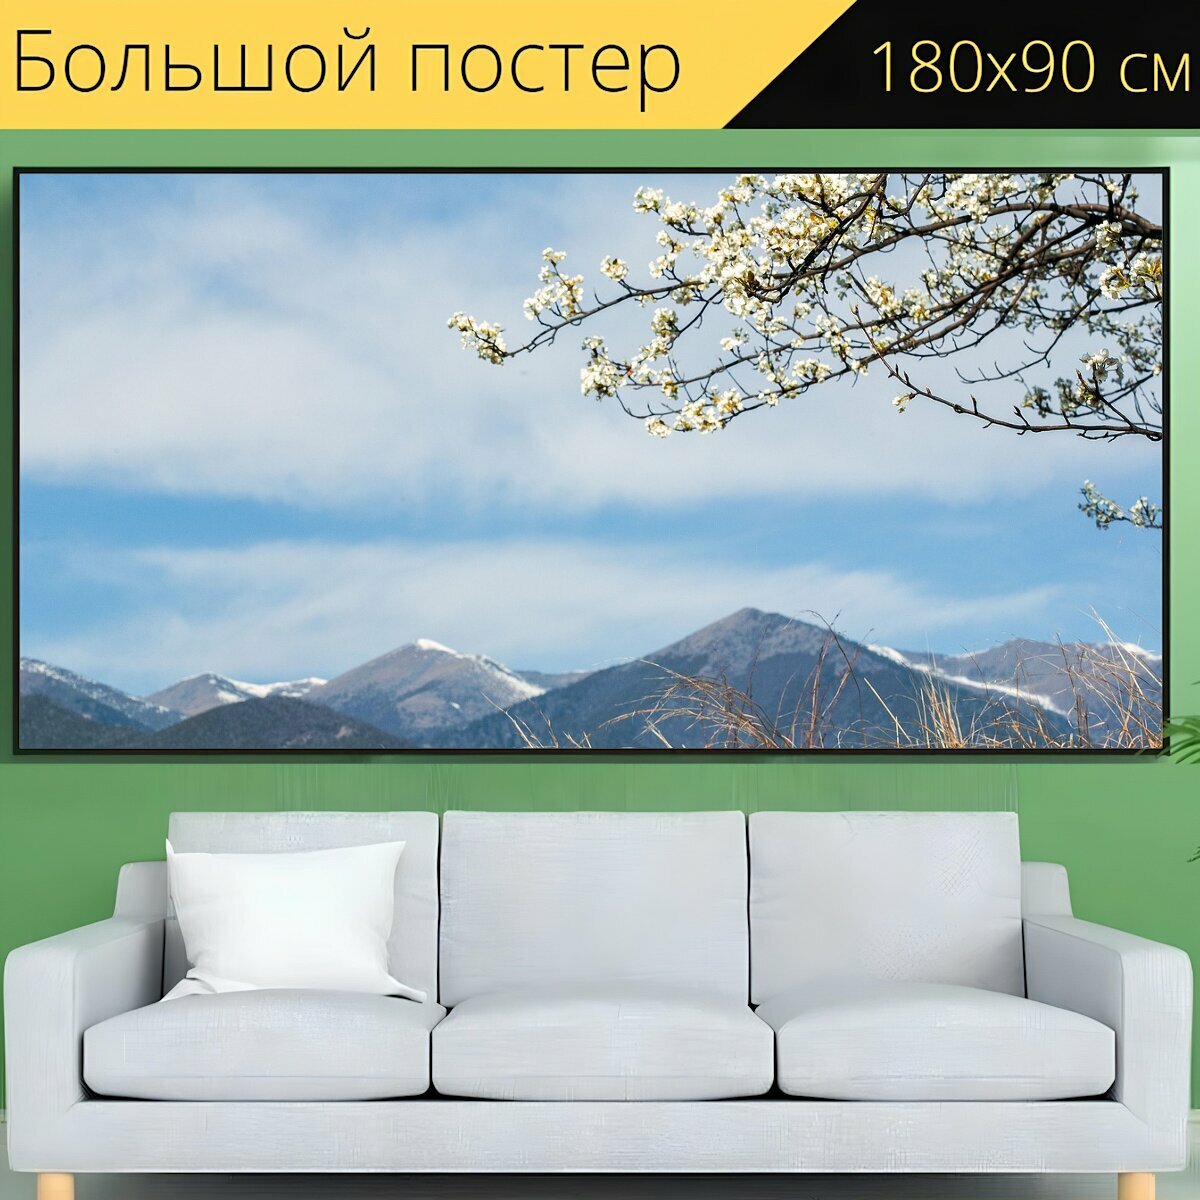 Большой постер "Пейзаж, путешествовать, сезон" 180 x 90 см. для интерьера